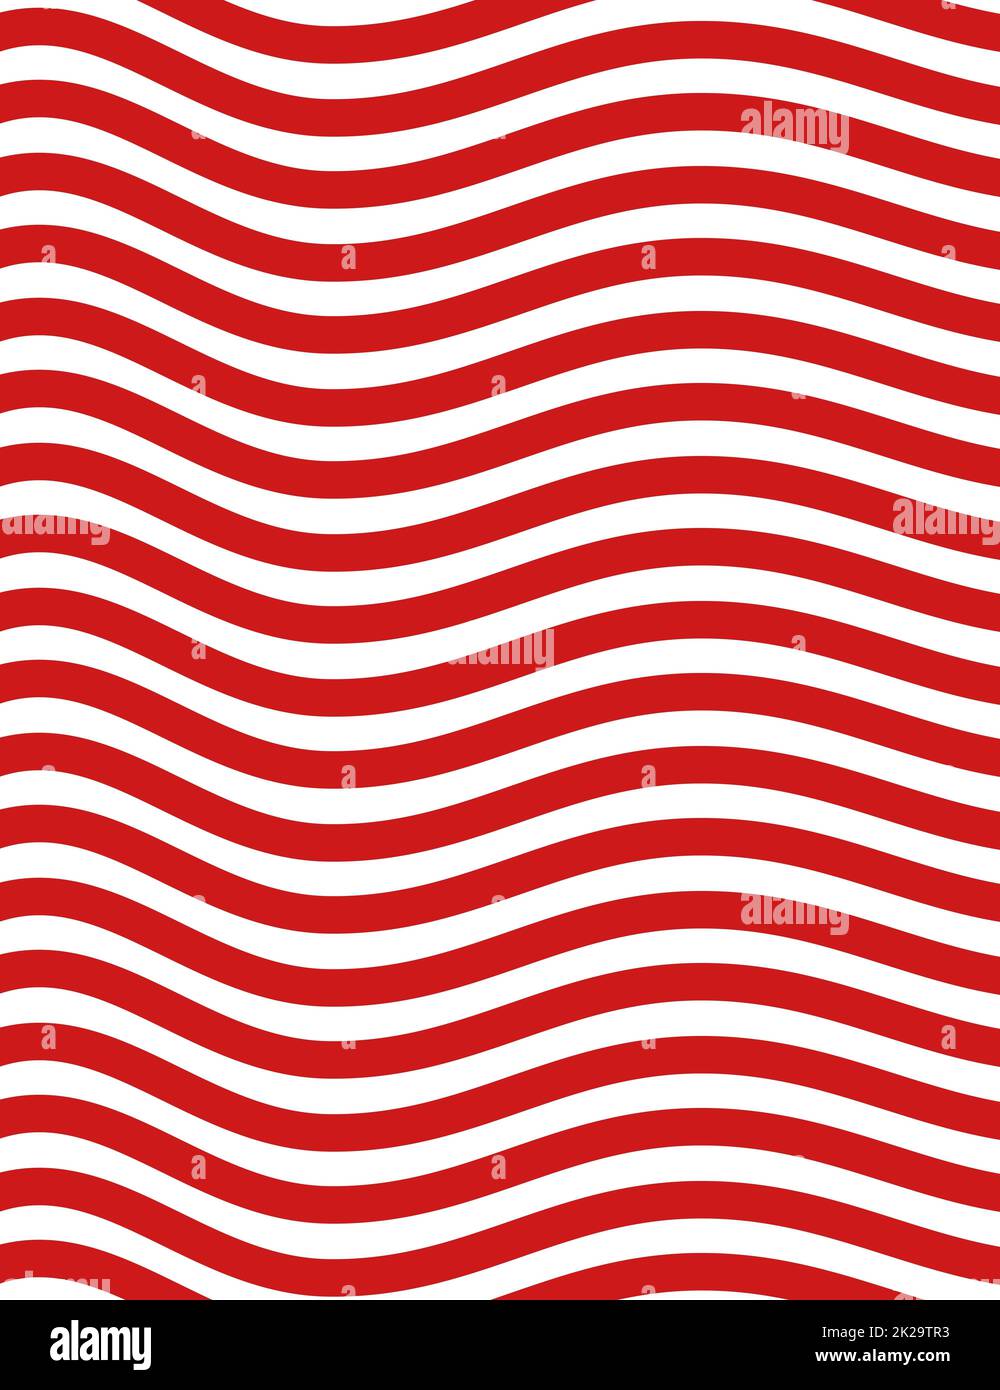 Motif ondulé avec bandes rouges et blanches Banque D'Images